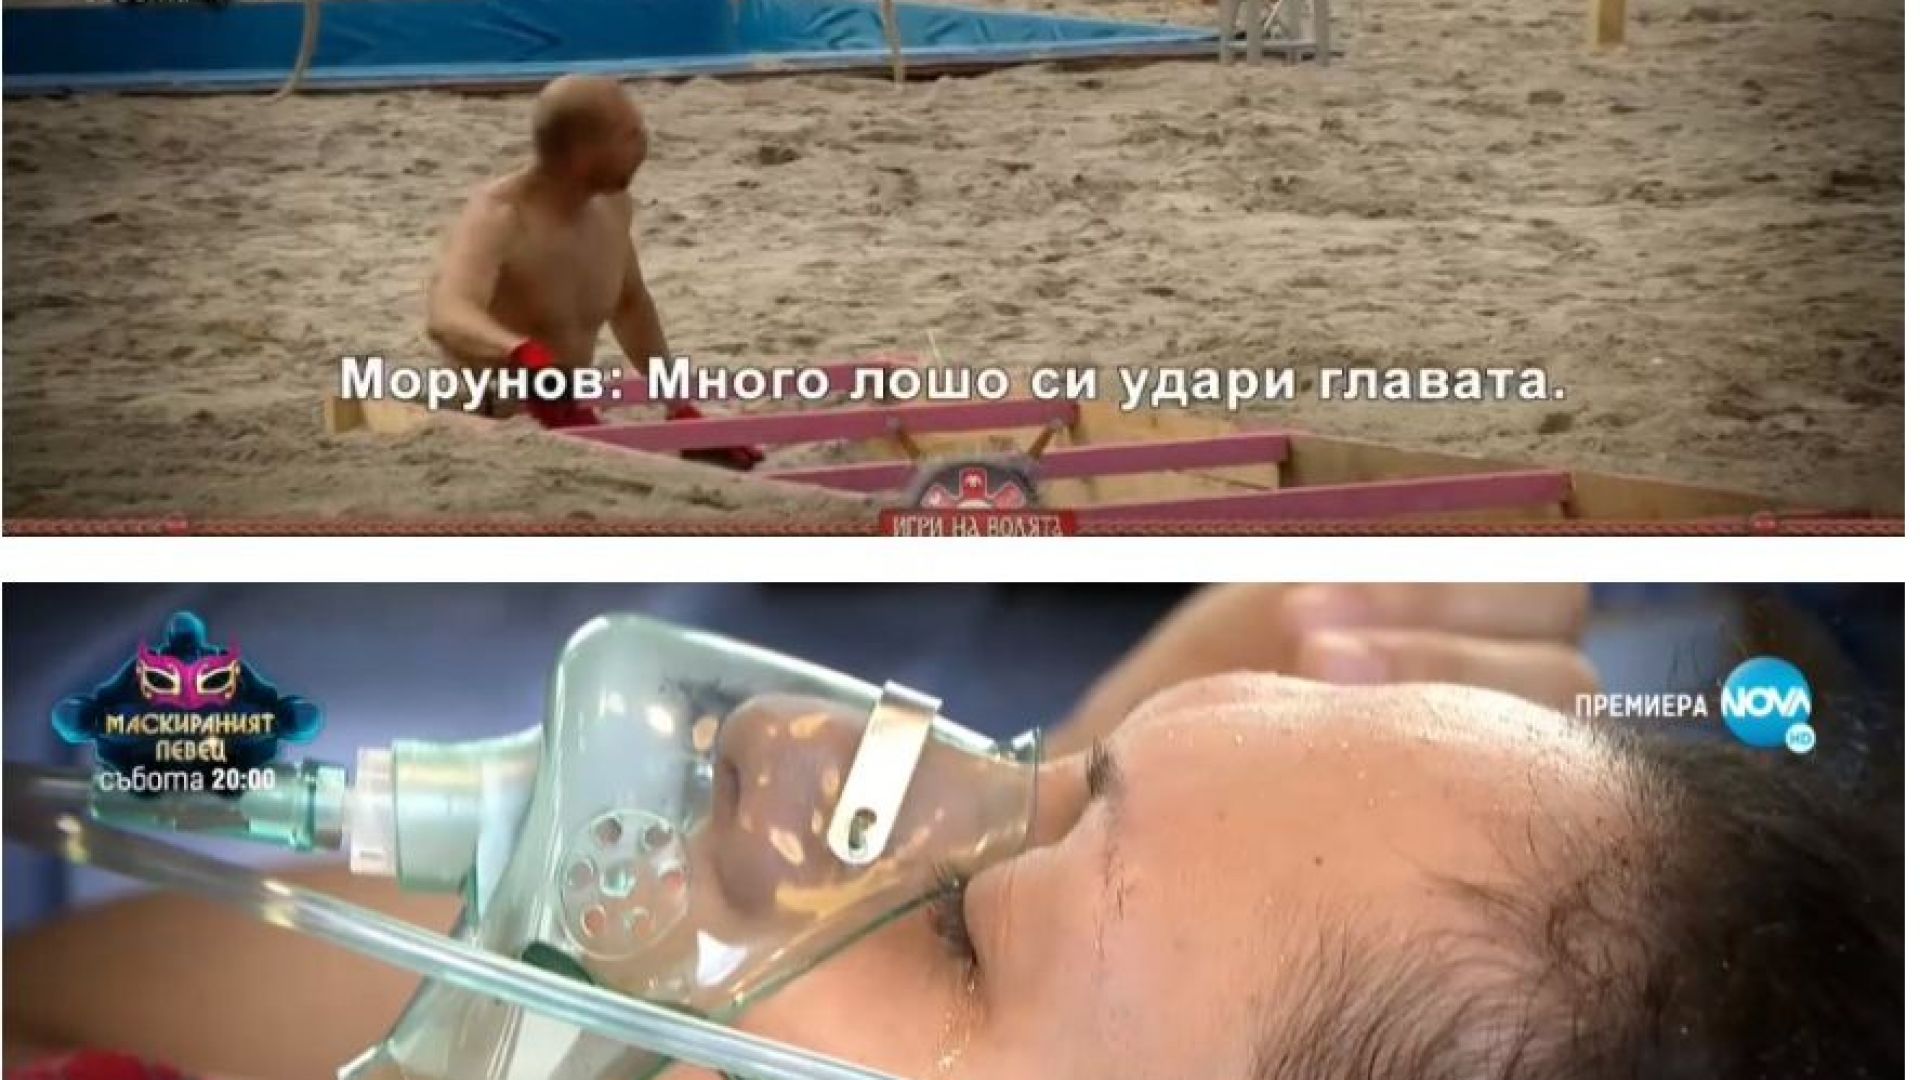 Станислава от "Игри на волята" пострада, лекари й слагат кислородна маска